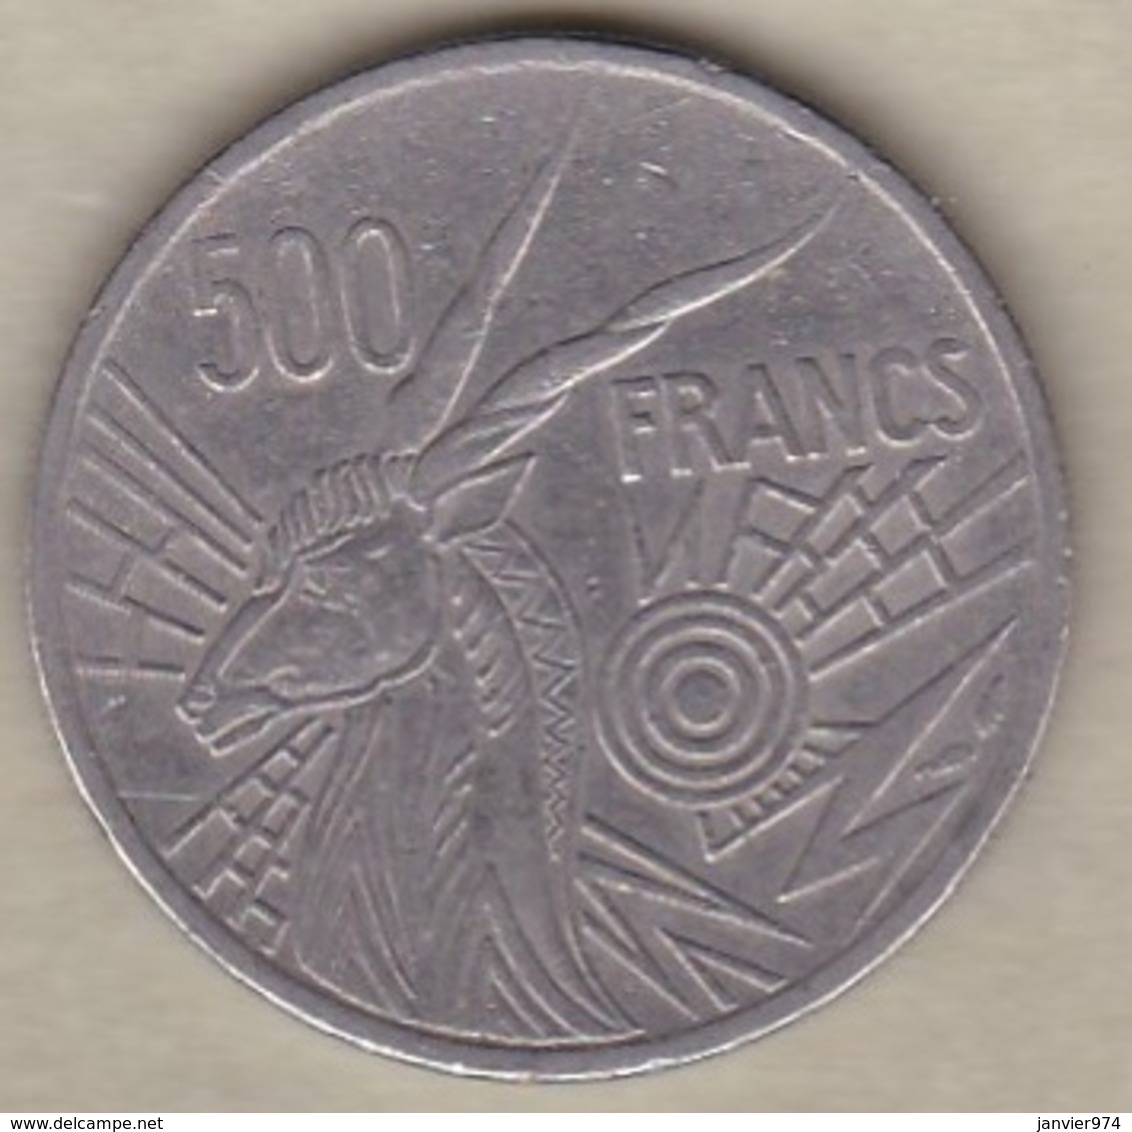 Banque Des Etats De L'Afrique Centrale. 500 Francs 1976 E Cameroun, En Nickel, KM# 12 - Kamerun